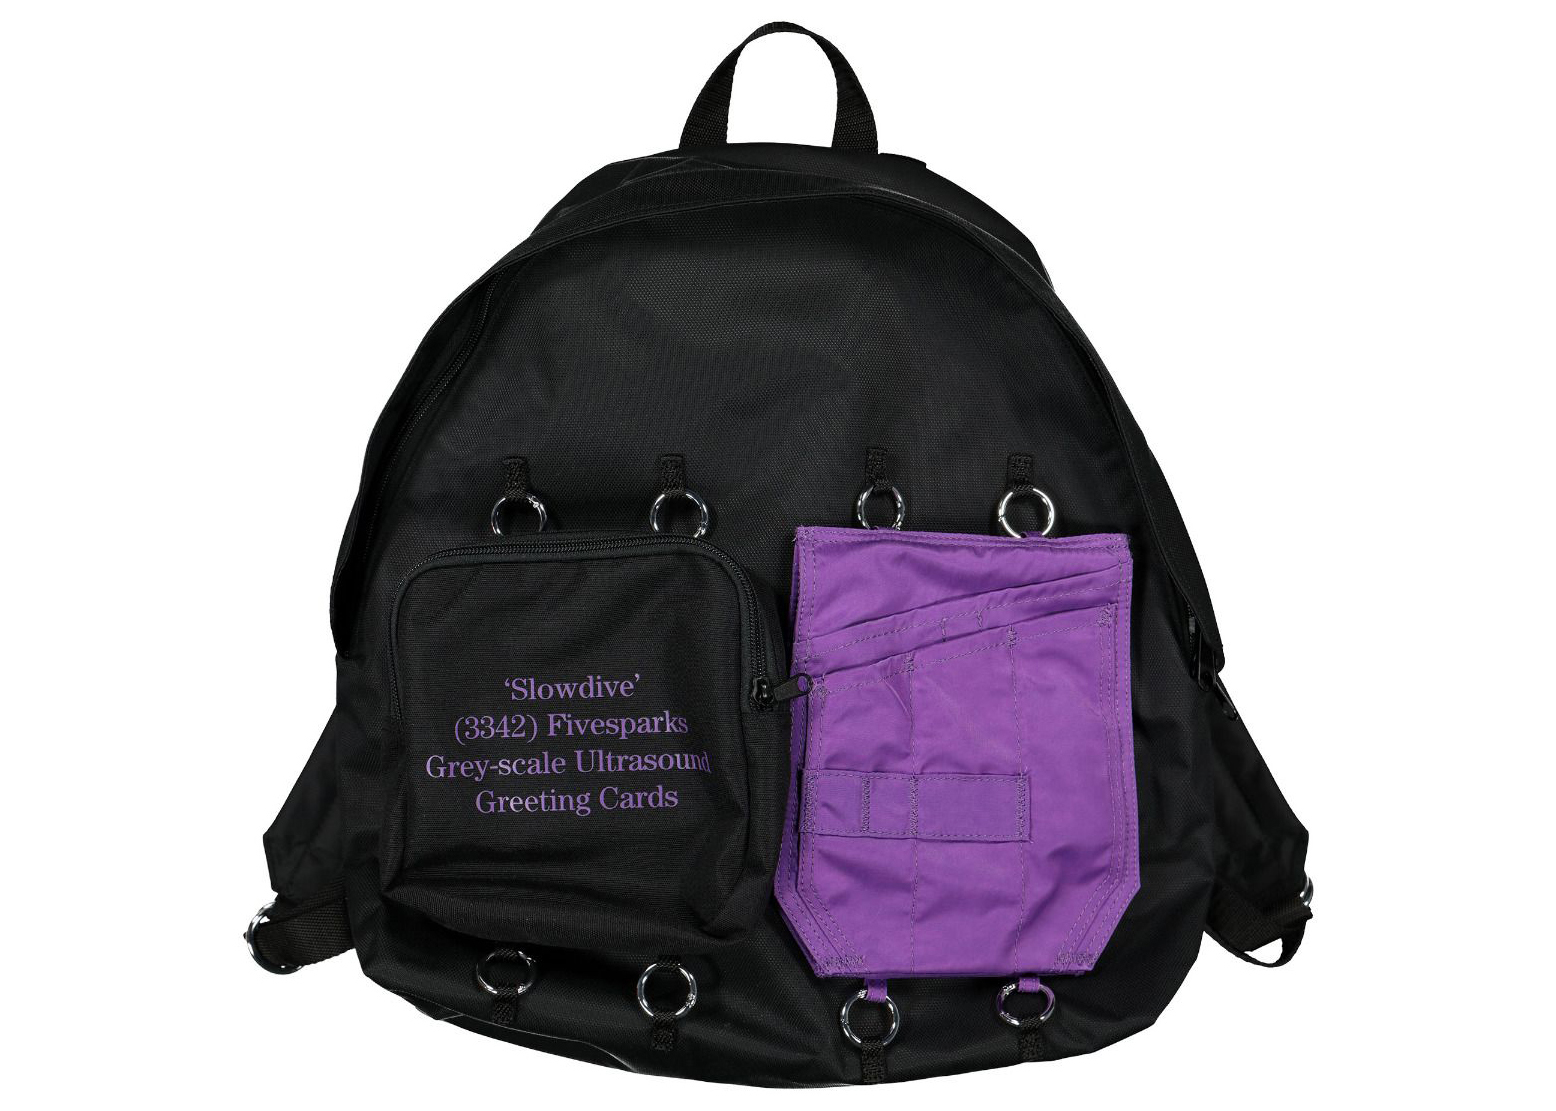 Raf Simons x Eastpak Padded Doubl'r Backpack Black/Purple in Nylon